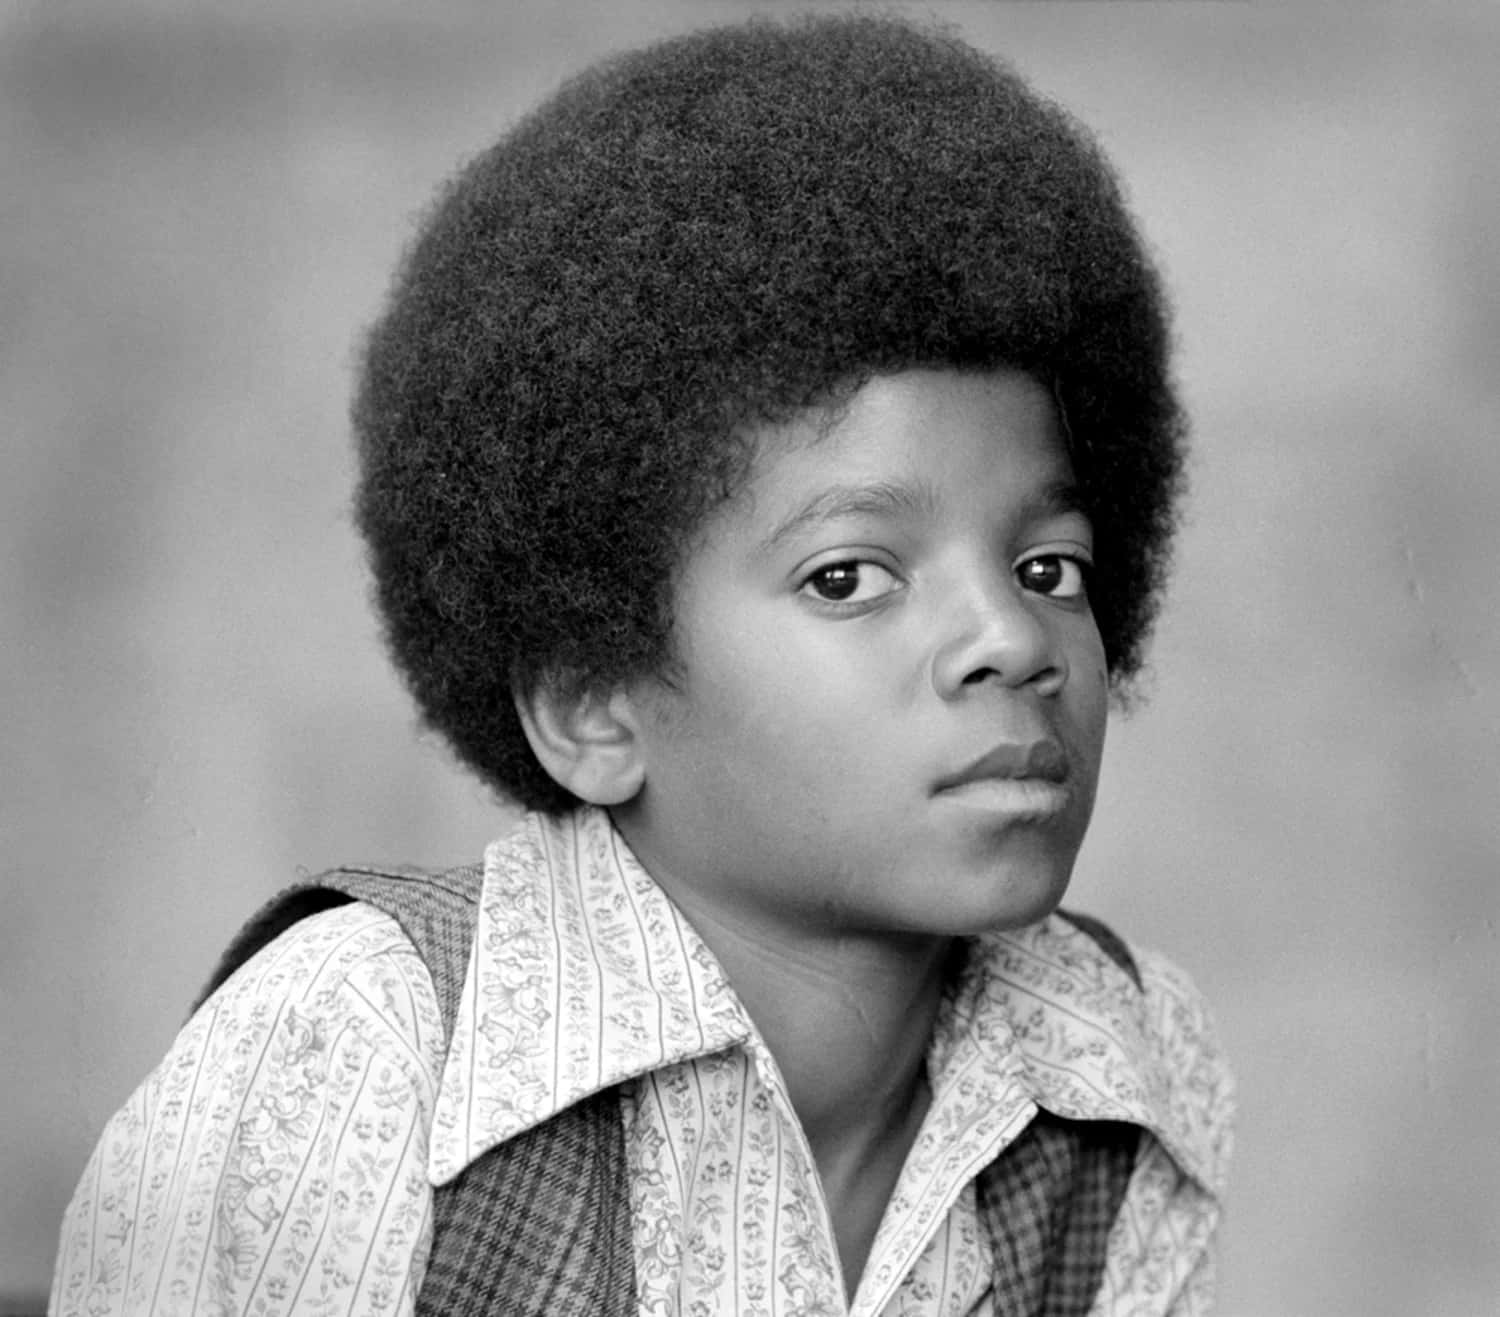 Michael Jackson's Thriller Dance Moves